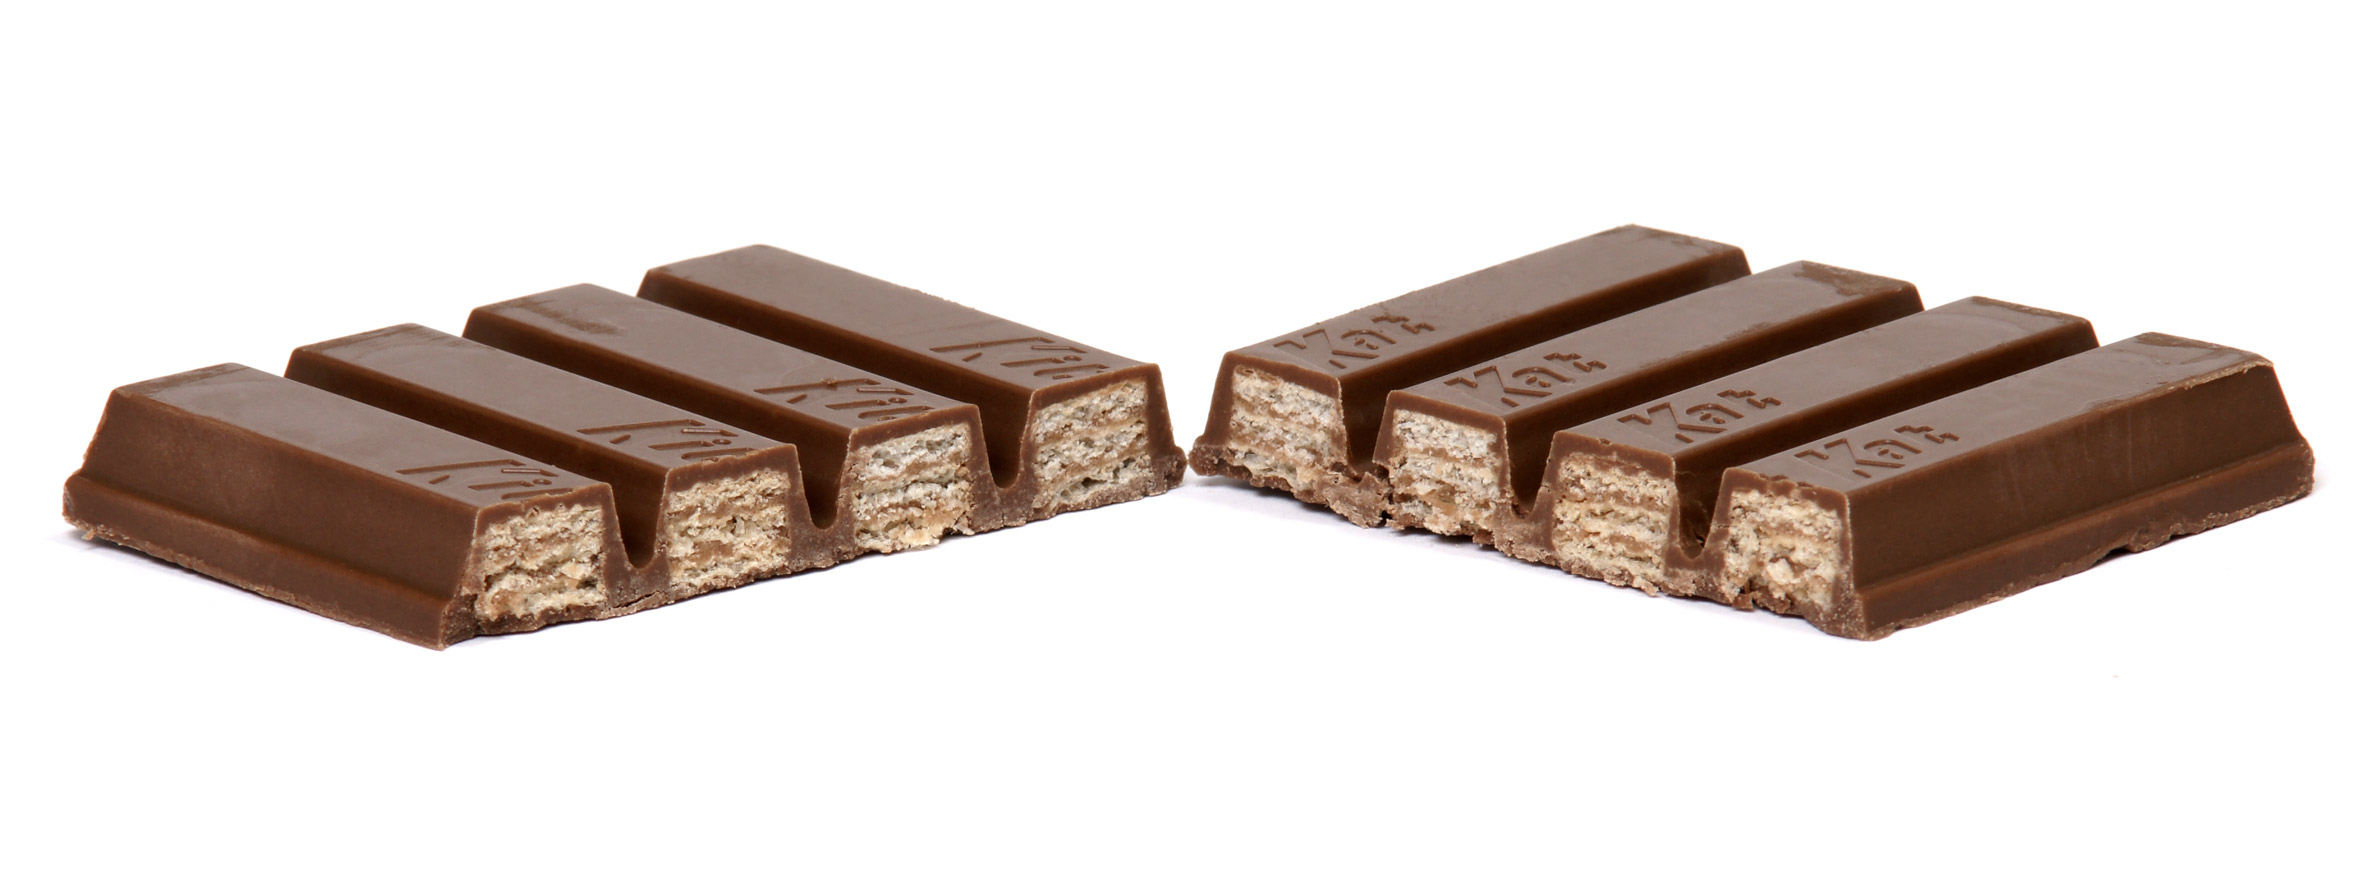 KitKat denied UK trade mark for four-fingered chocolate bar